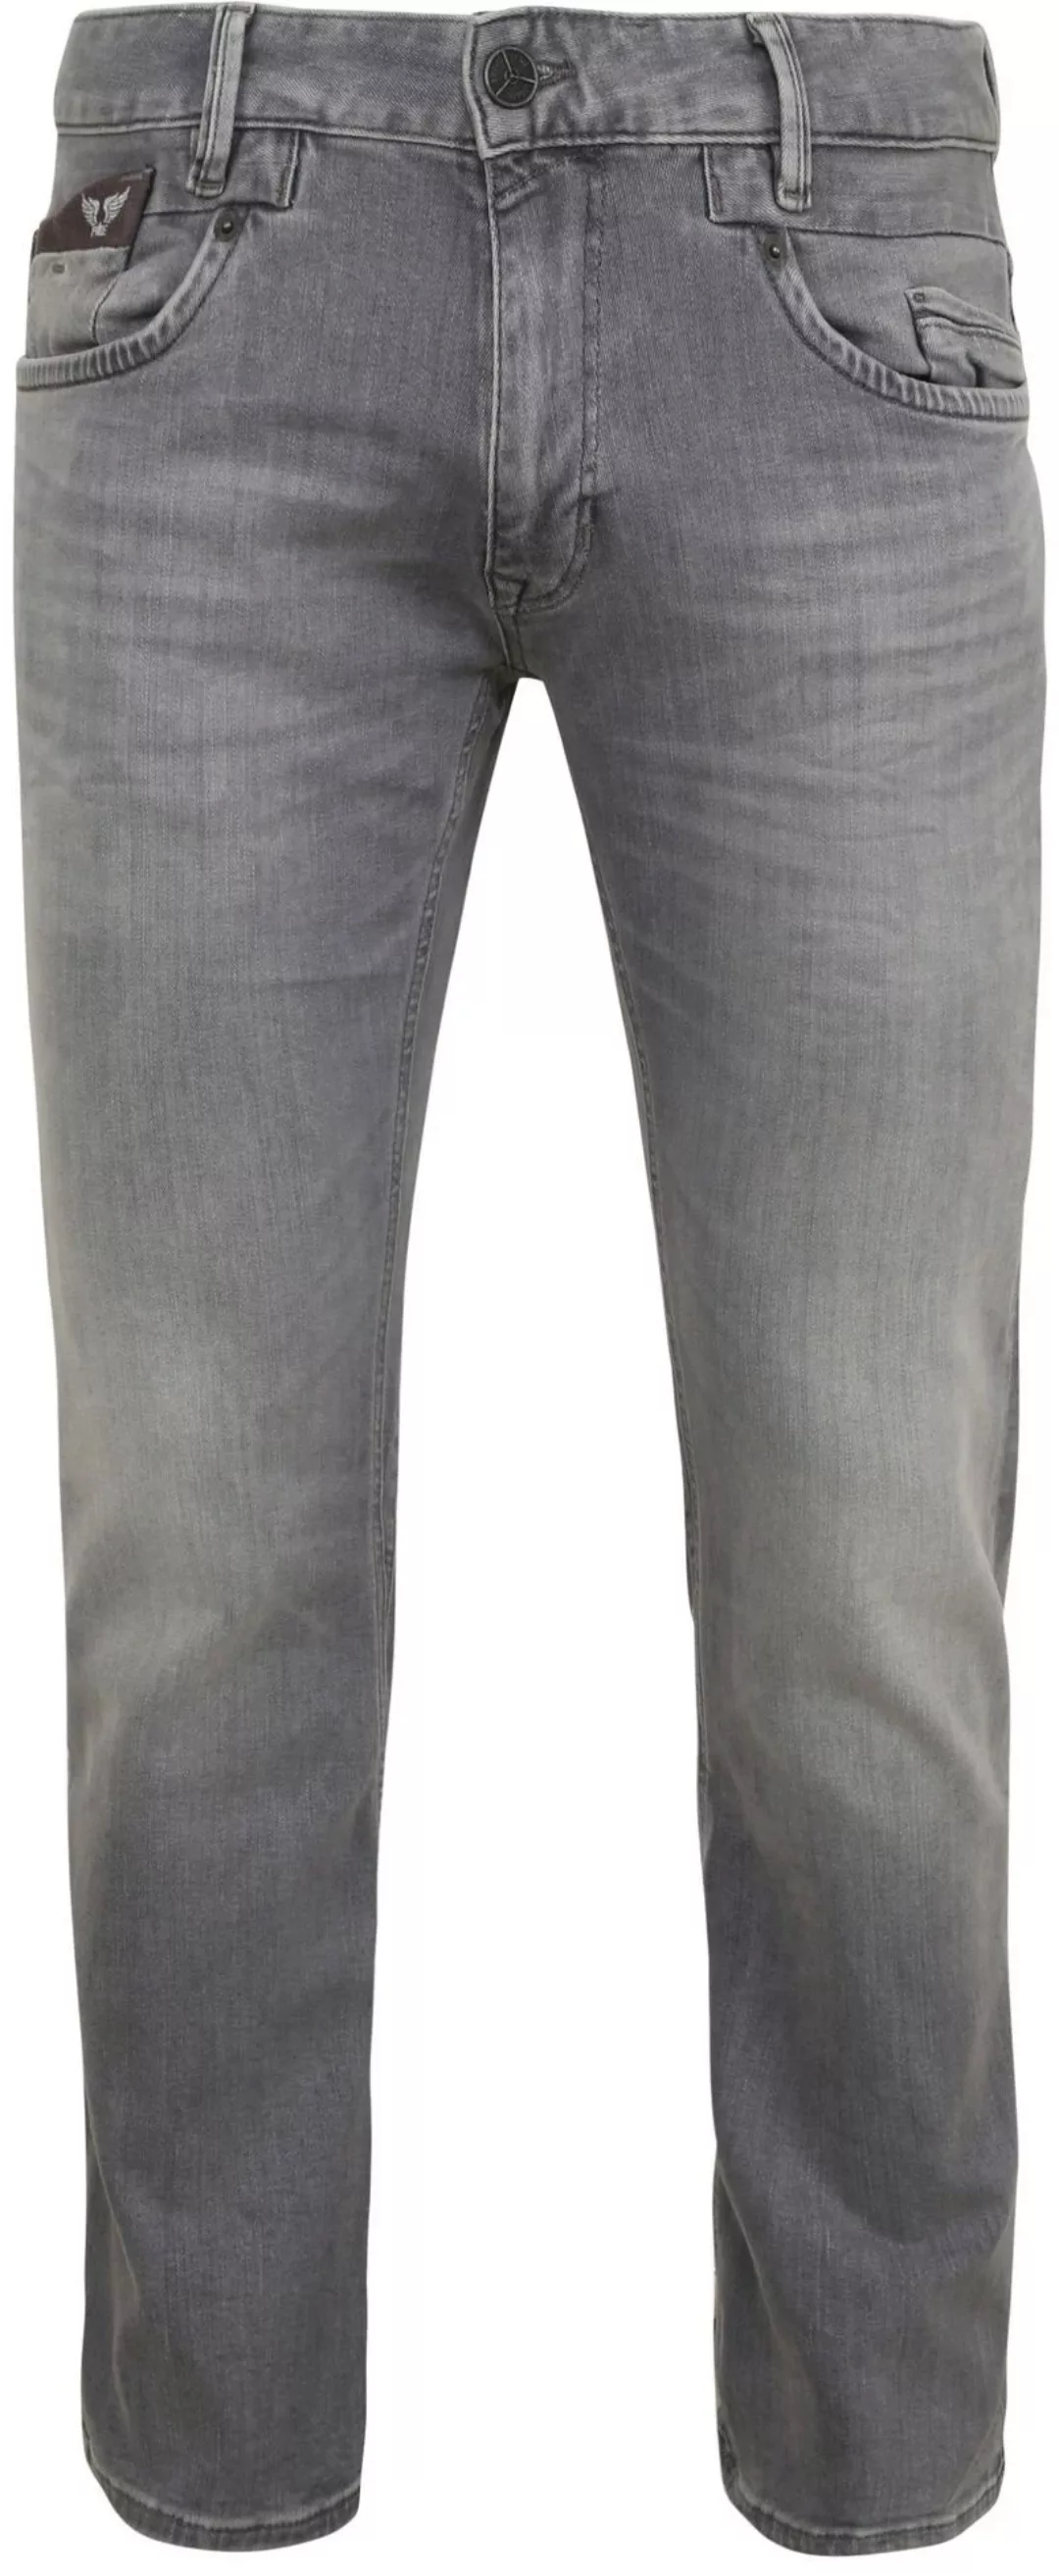 PME Legend Commander 3.0 Jeans Grau - Größe W 40 - L 34 günstig online kaufen